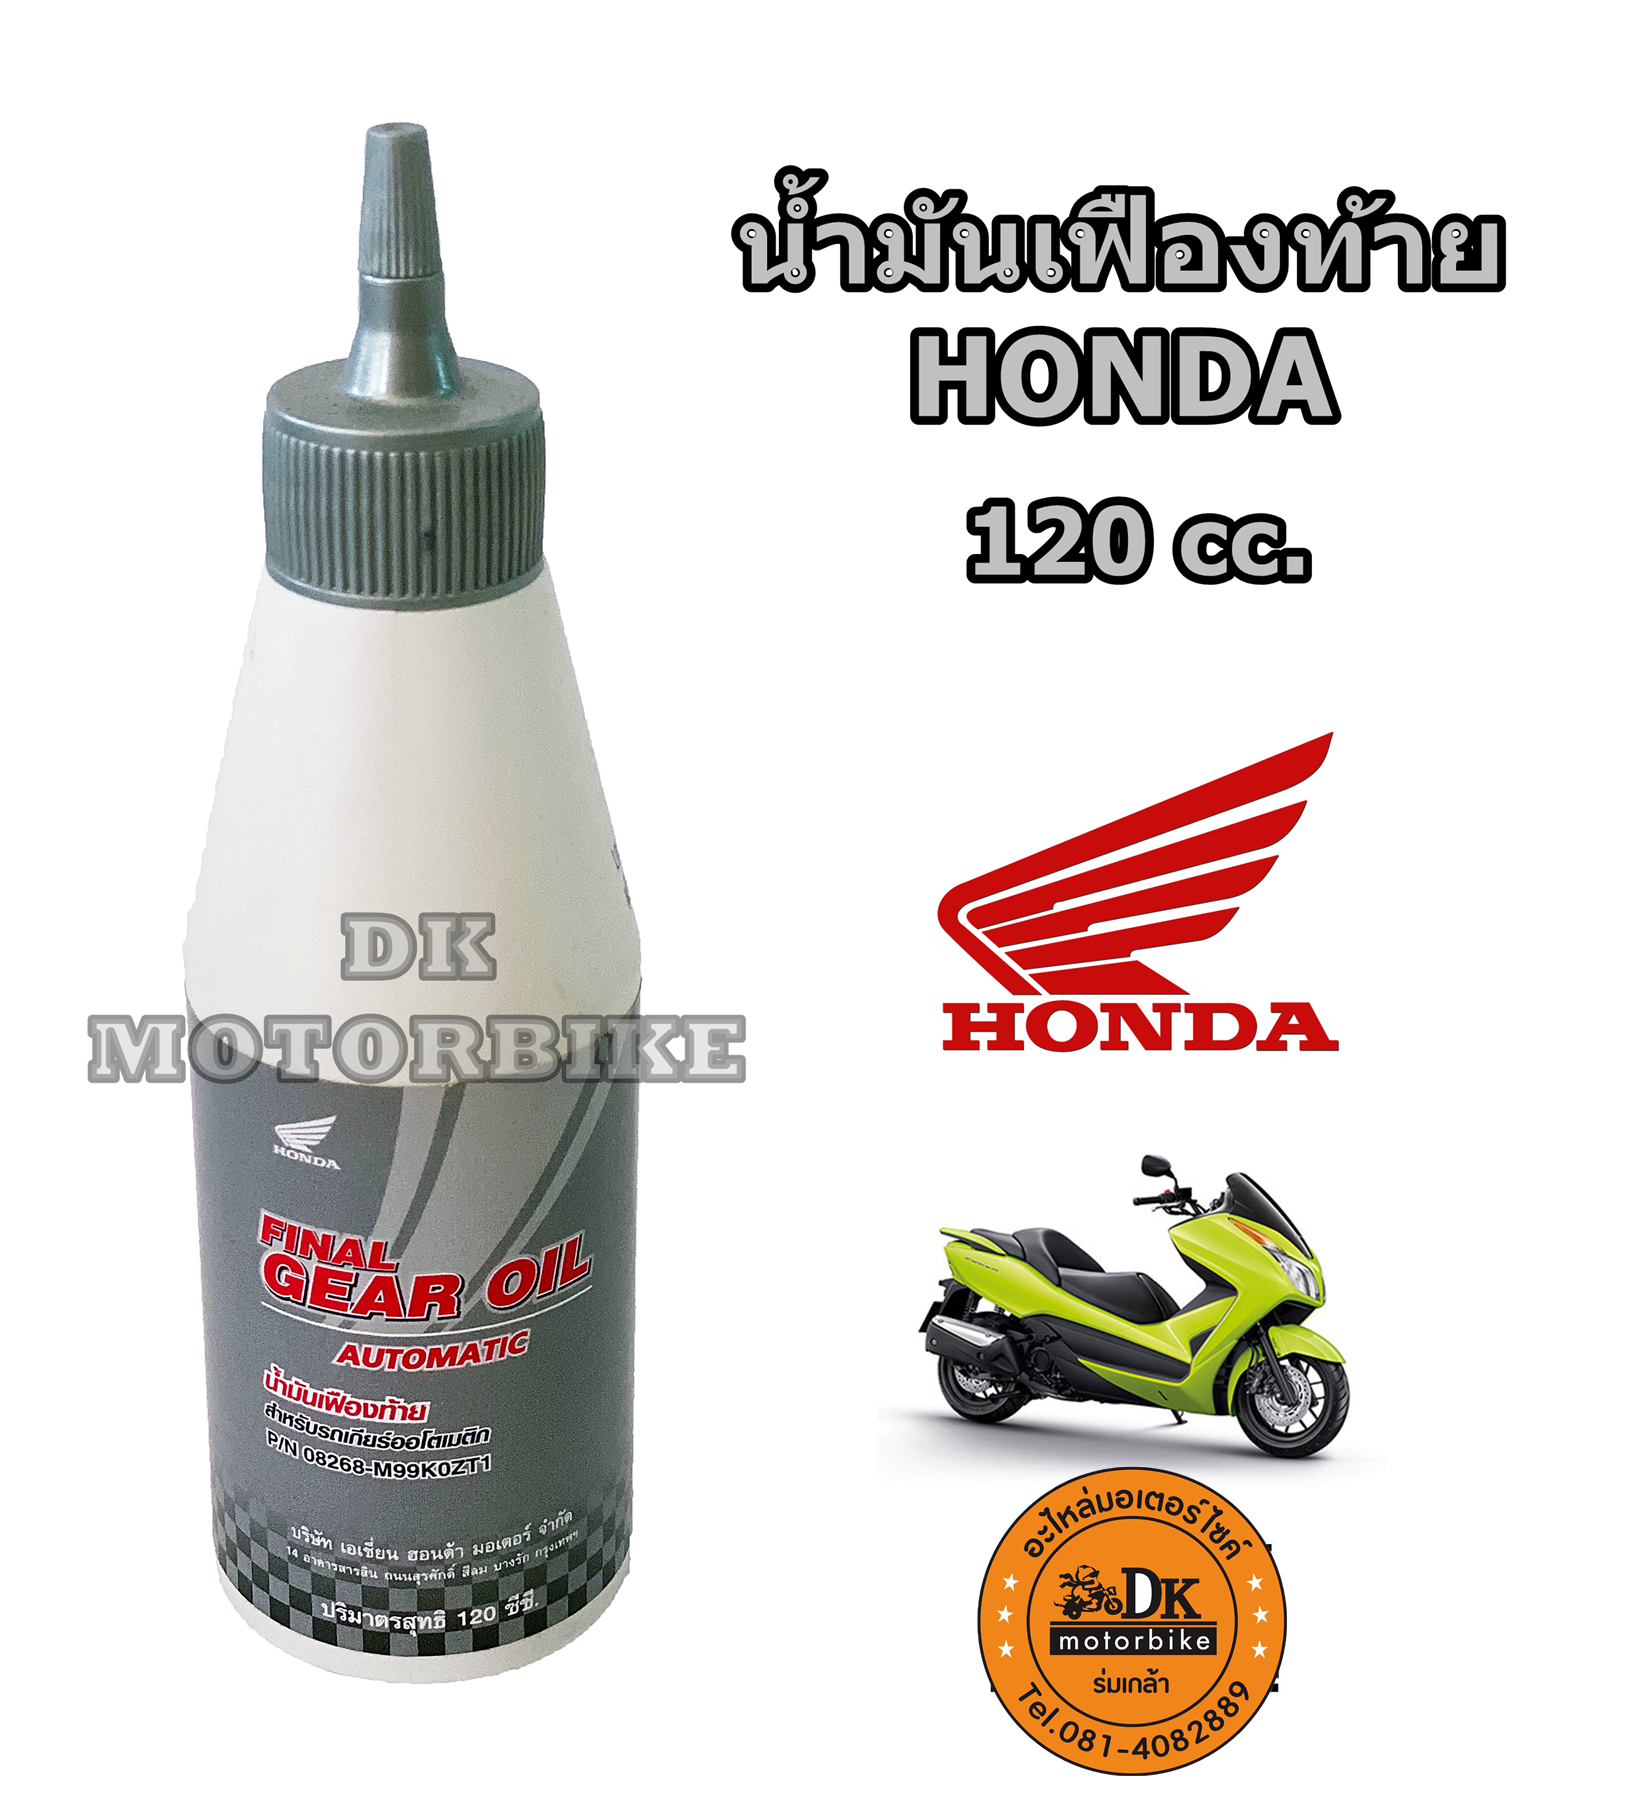 น้ำมันเฟืองท้าย HONDA 120 cc. สำหรับรถมอเตอร์ไซด์ระบบออโตเมติค ทุกรุ่น (รับประกันน้ำมันแท้ศูนย์ HONDA 100%) #มีราคาขายส่ง